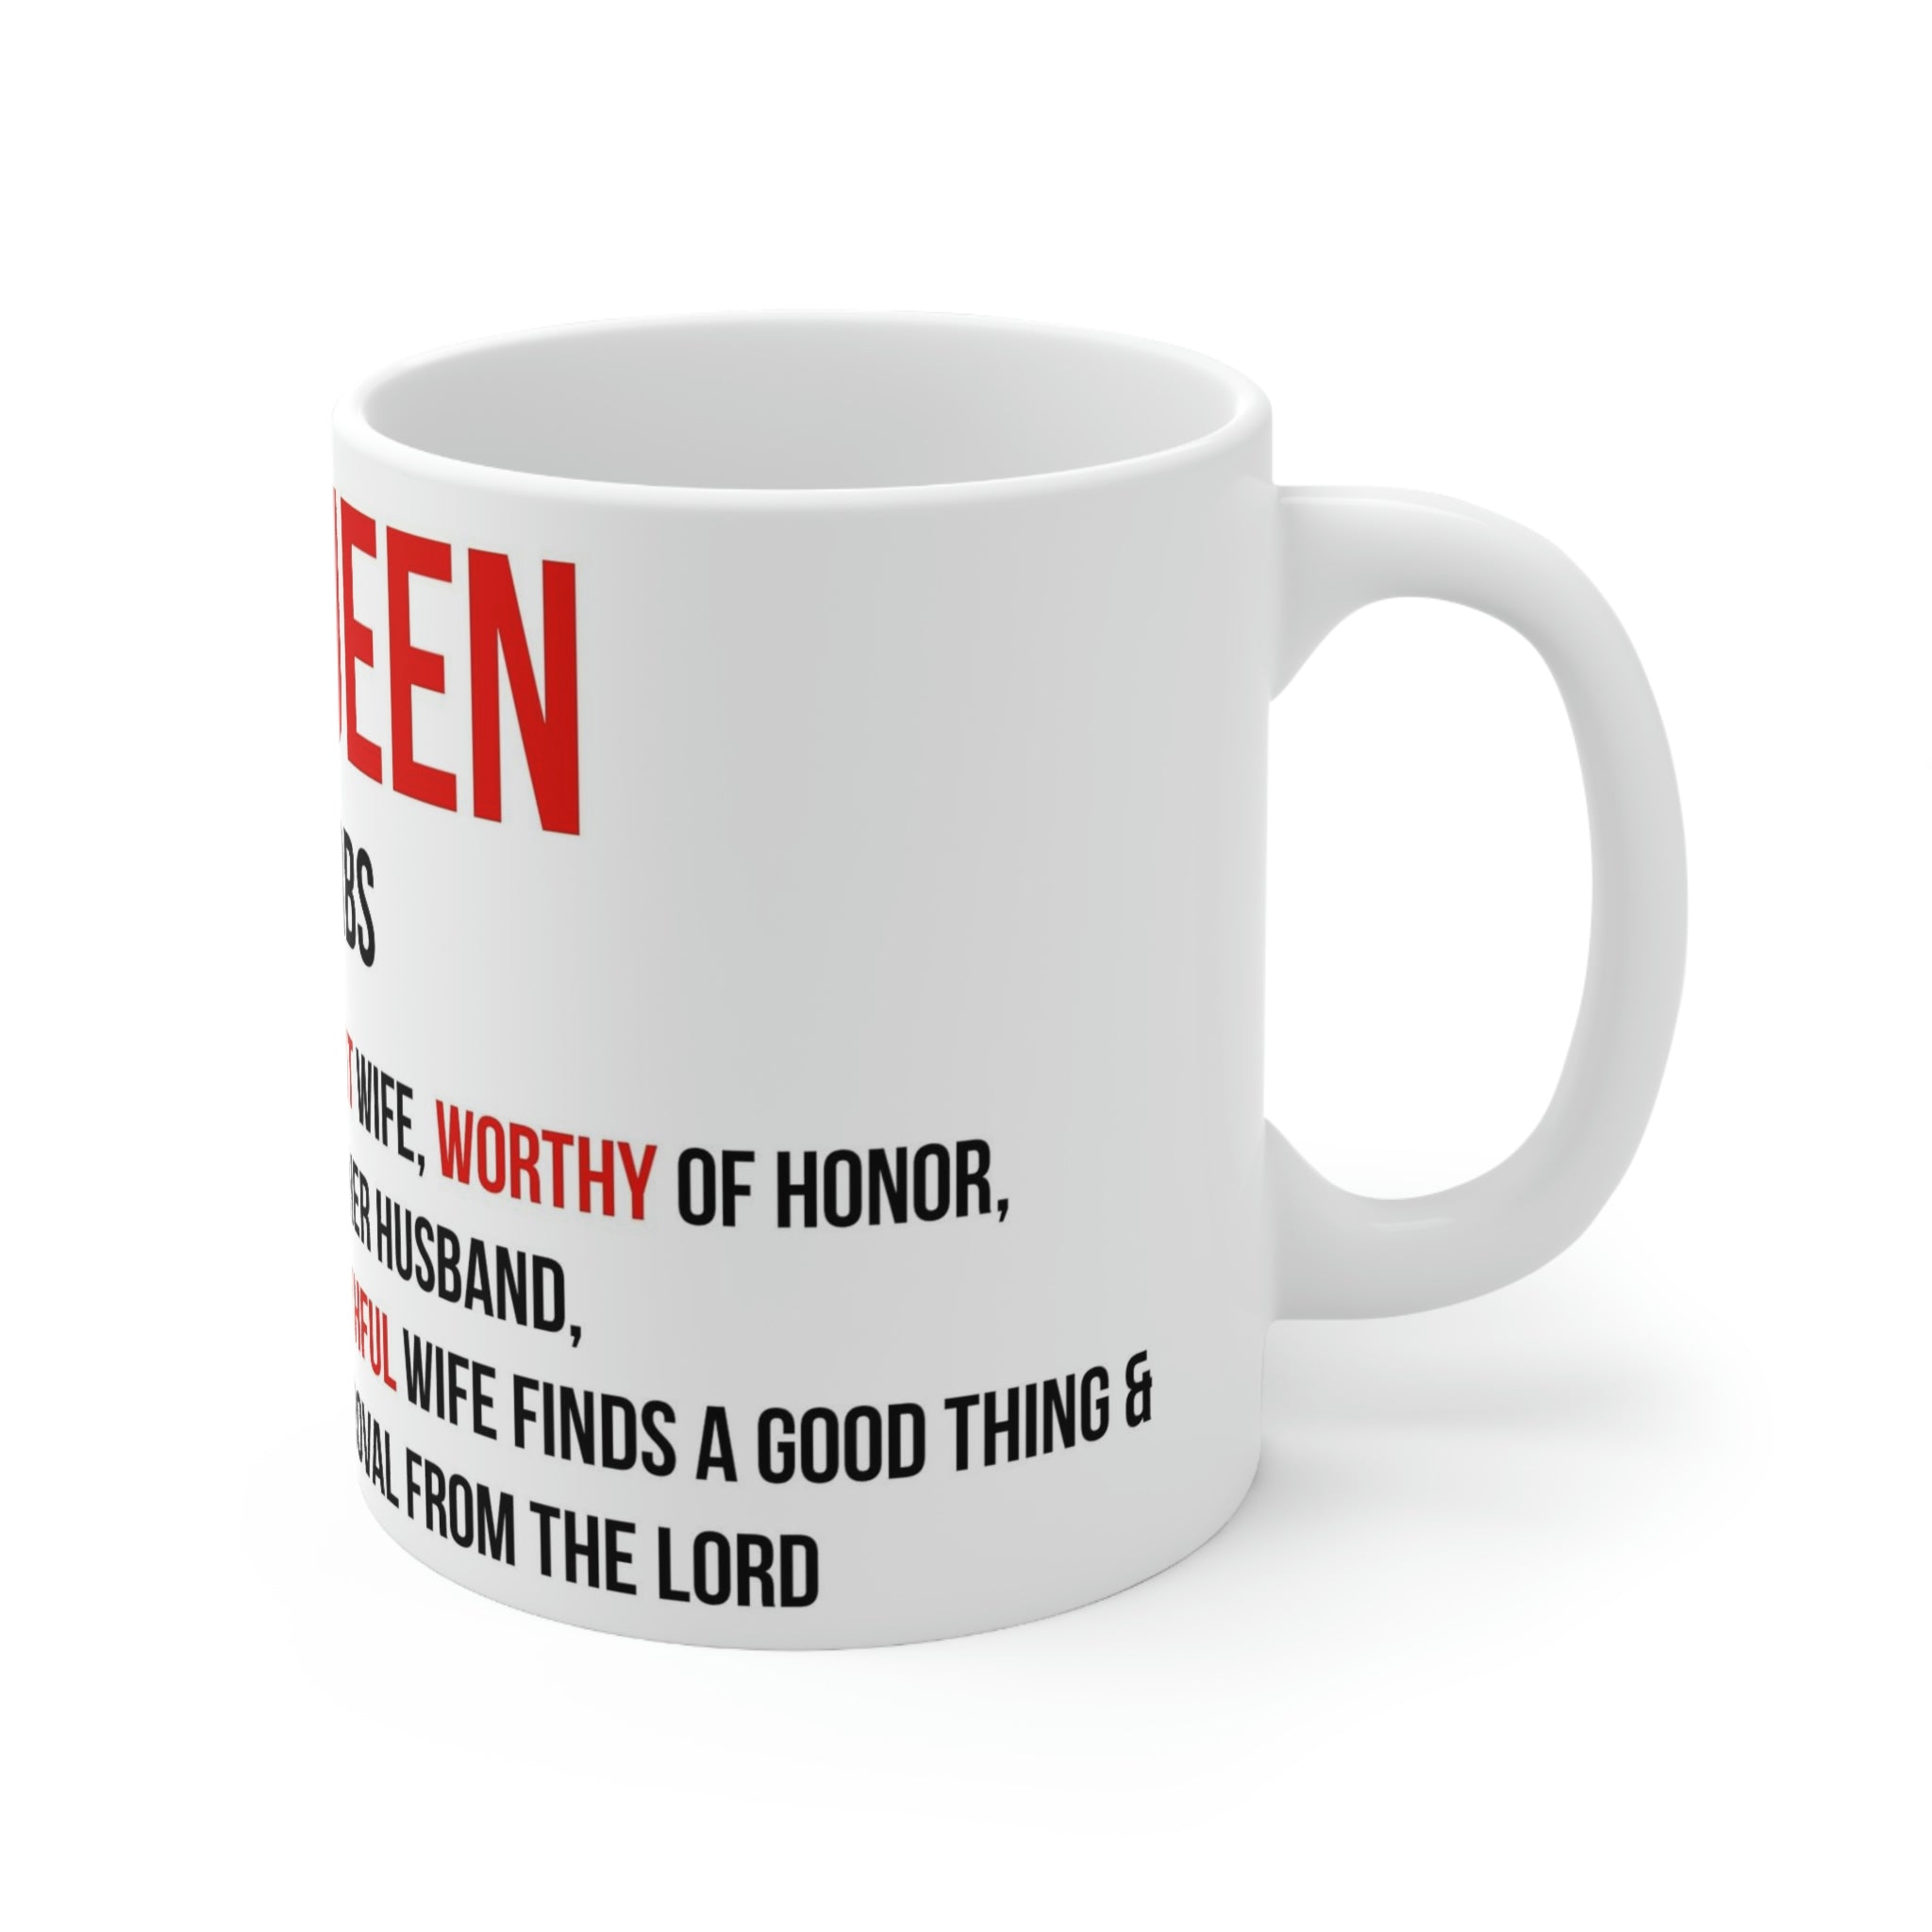 His Queen Proverbs Ceramic Mug 11oz